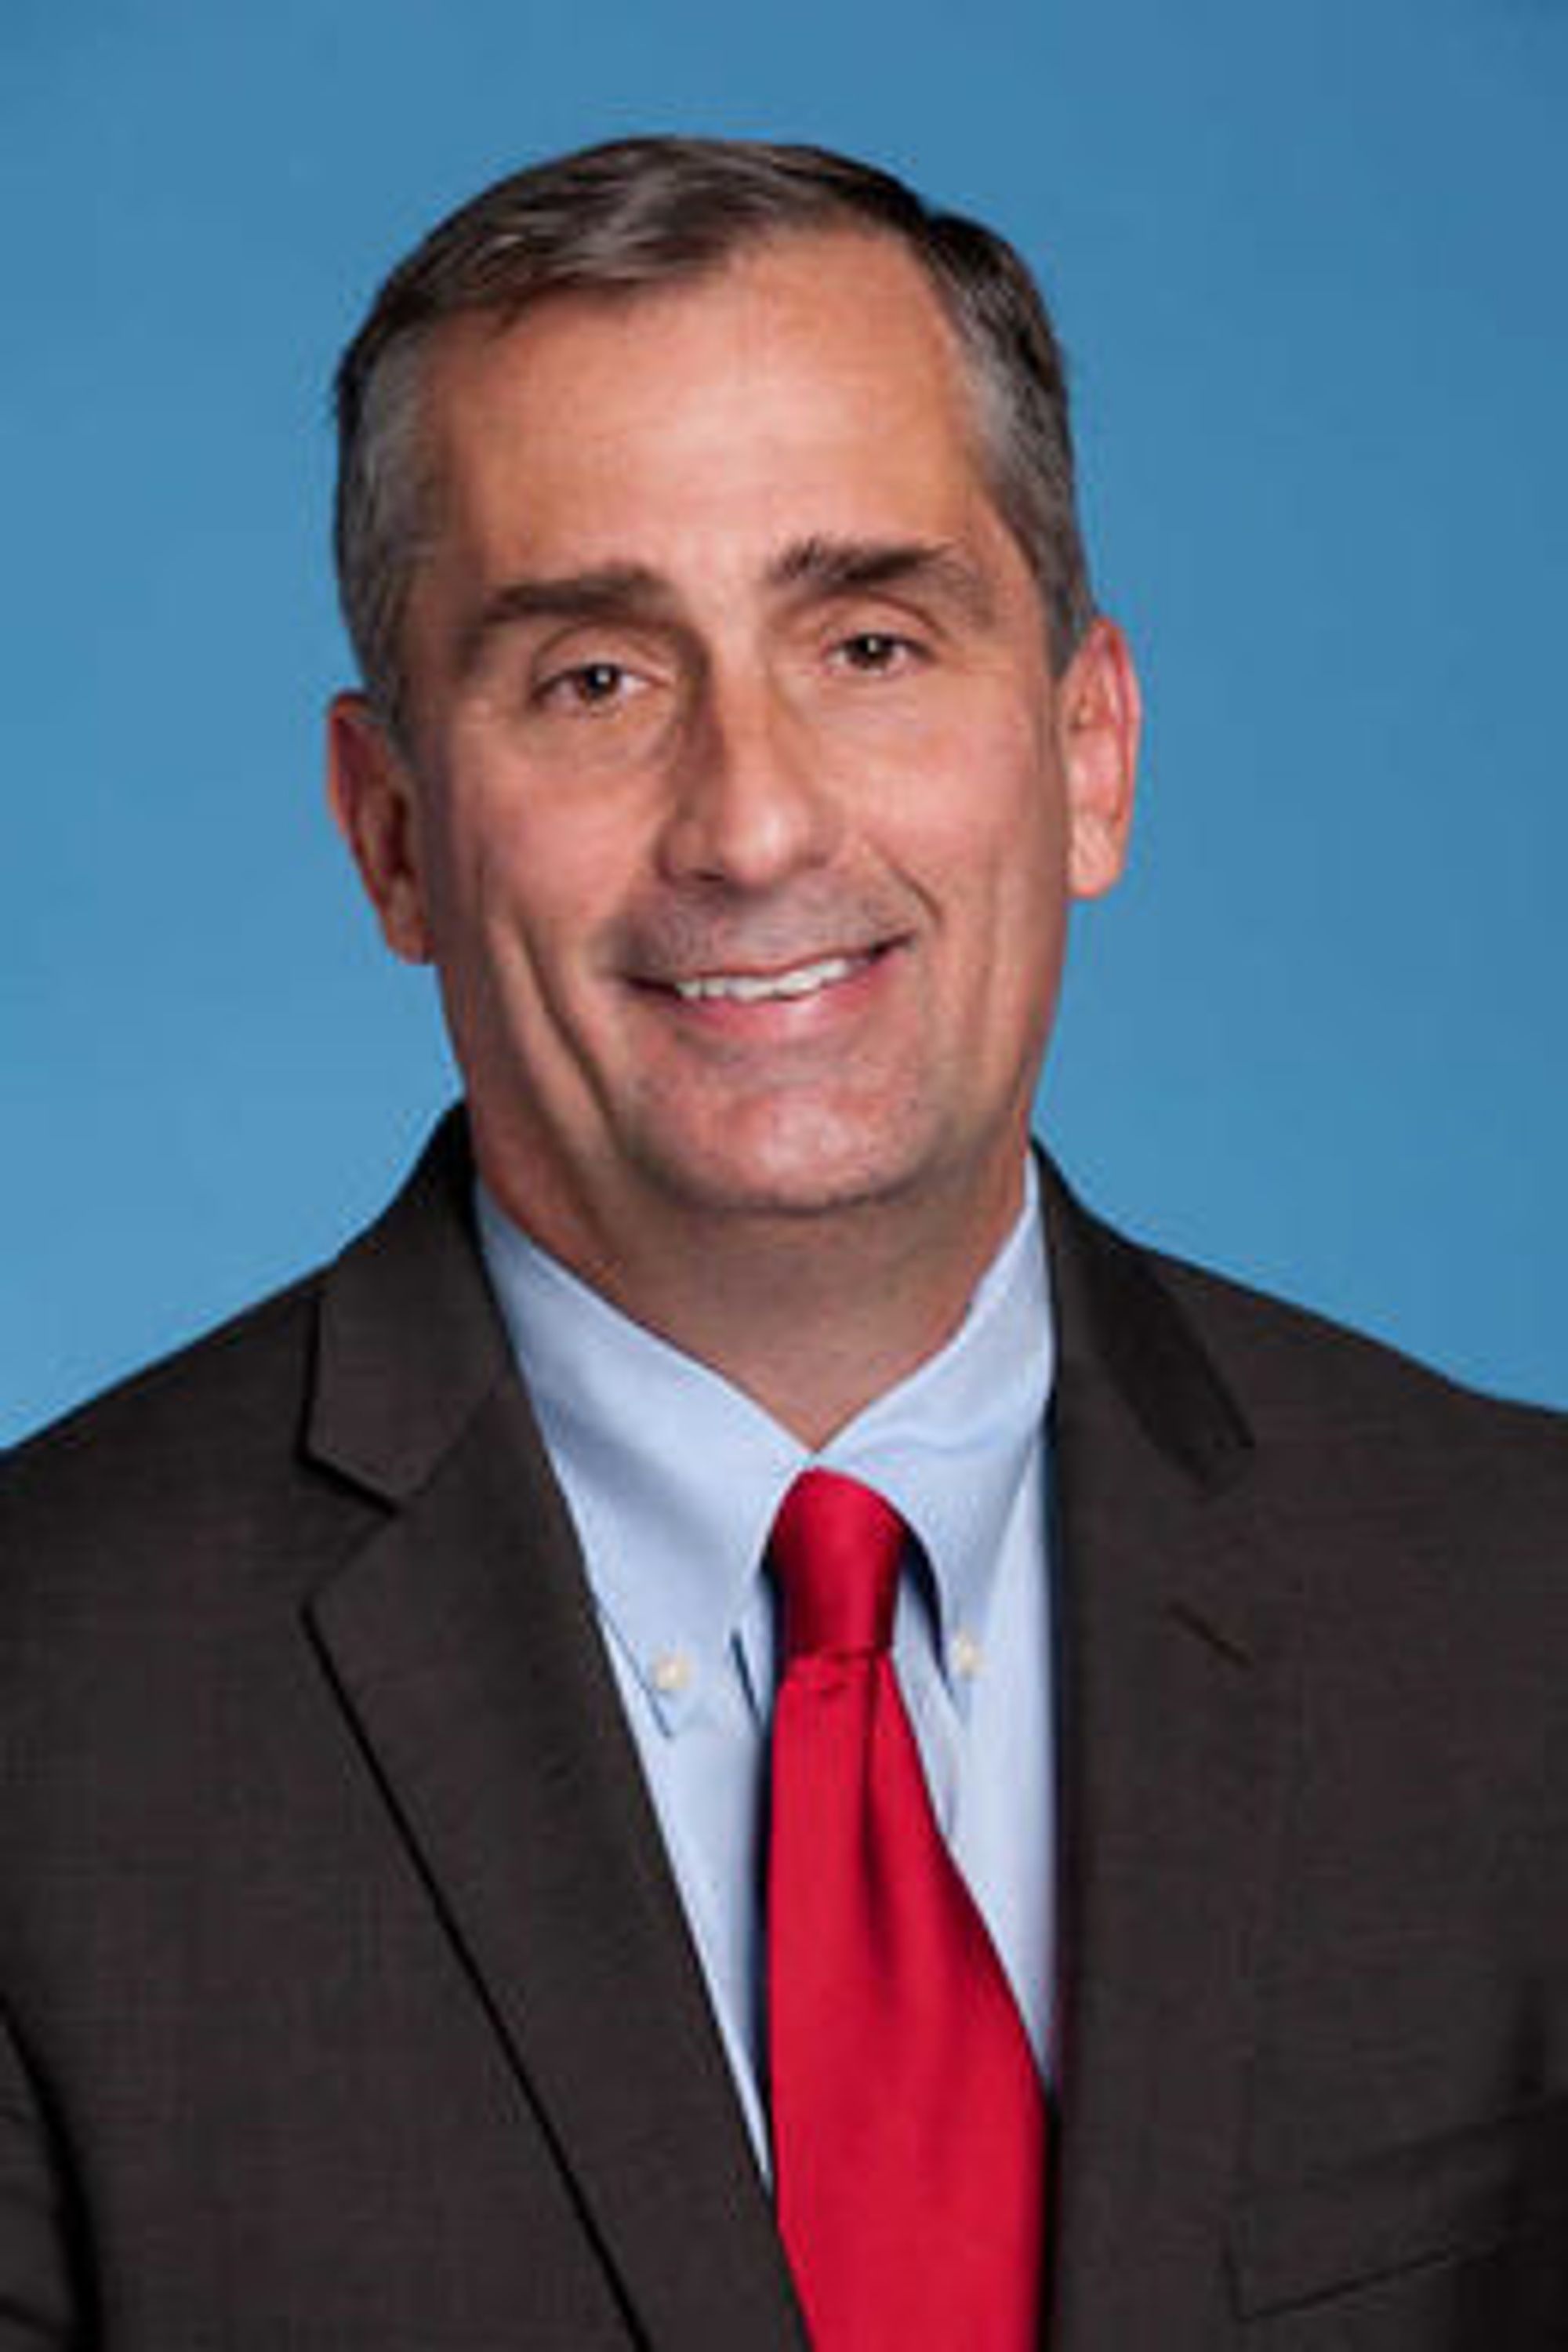 Brian Krzanich (bildet) overtok i mai som Intels toppsjef etter Paul Otellini. Utfordringene står i kø, men Krzanich forsøker å være optimist.